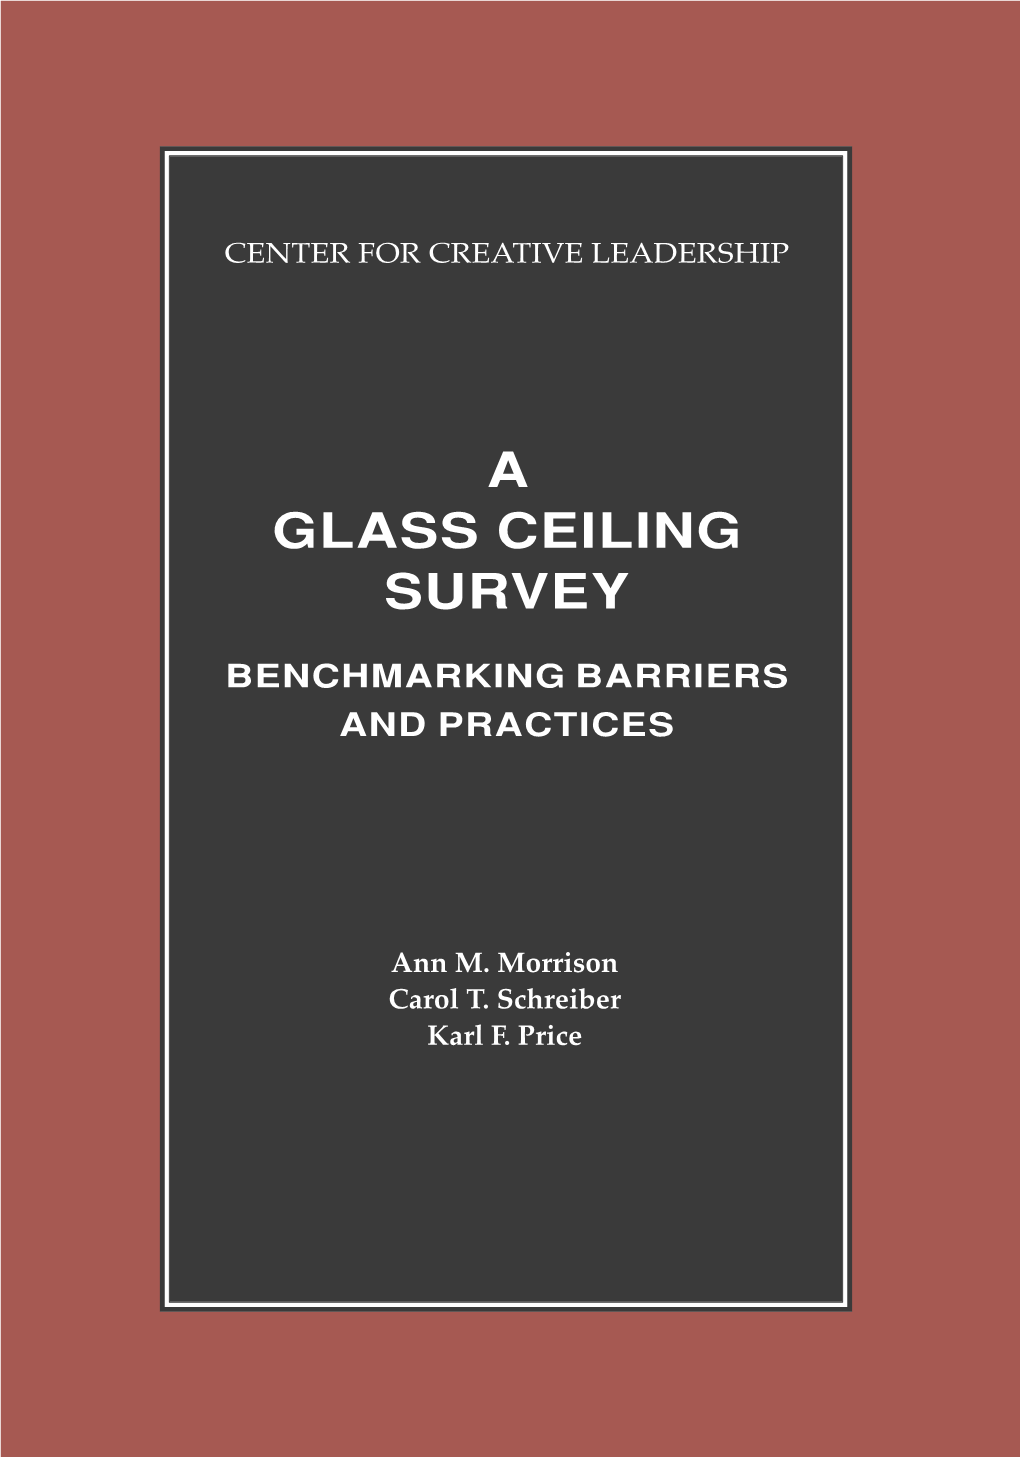 A Glass Ceiling Survey